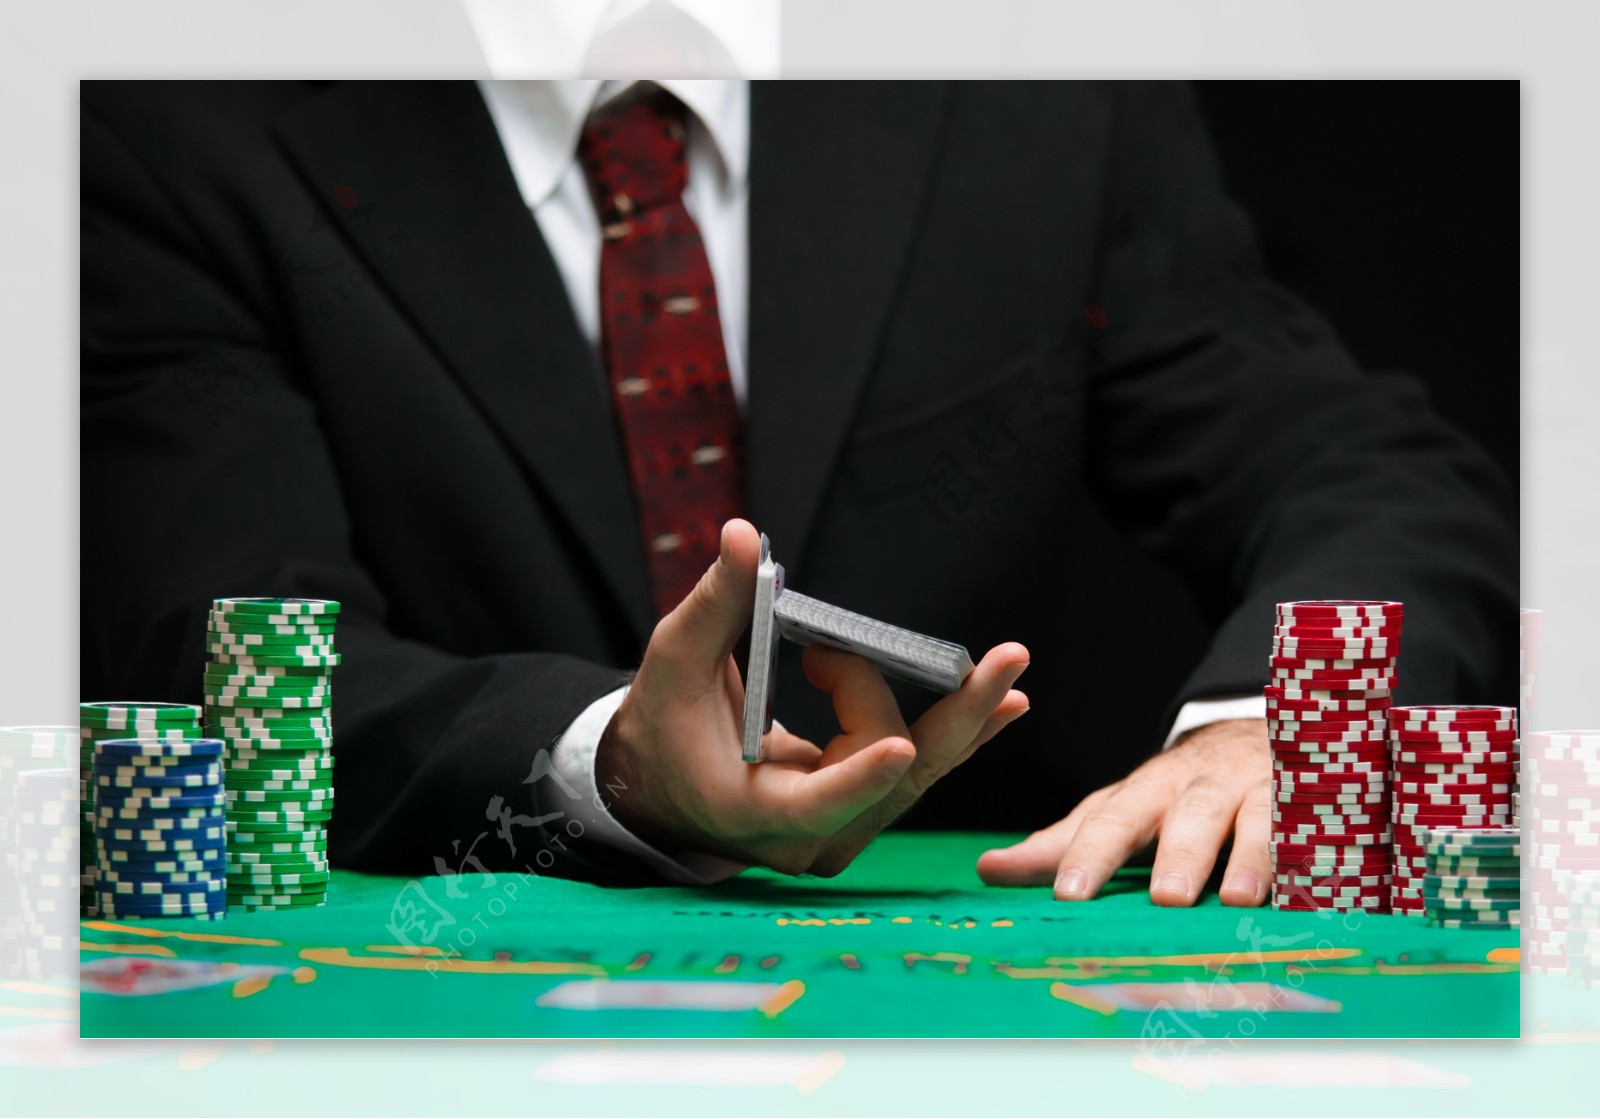 筹码和玩扑克的手图片